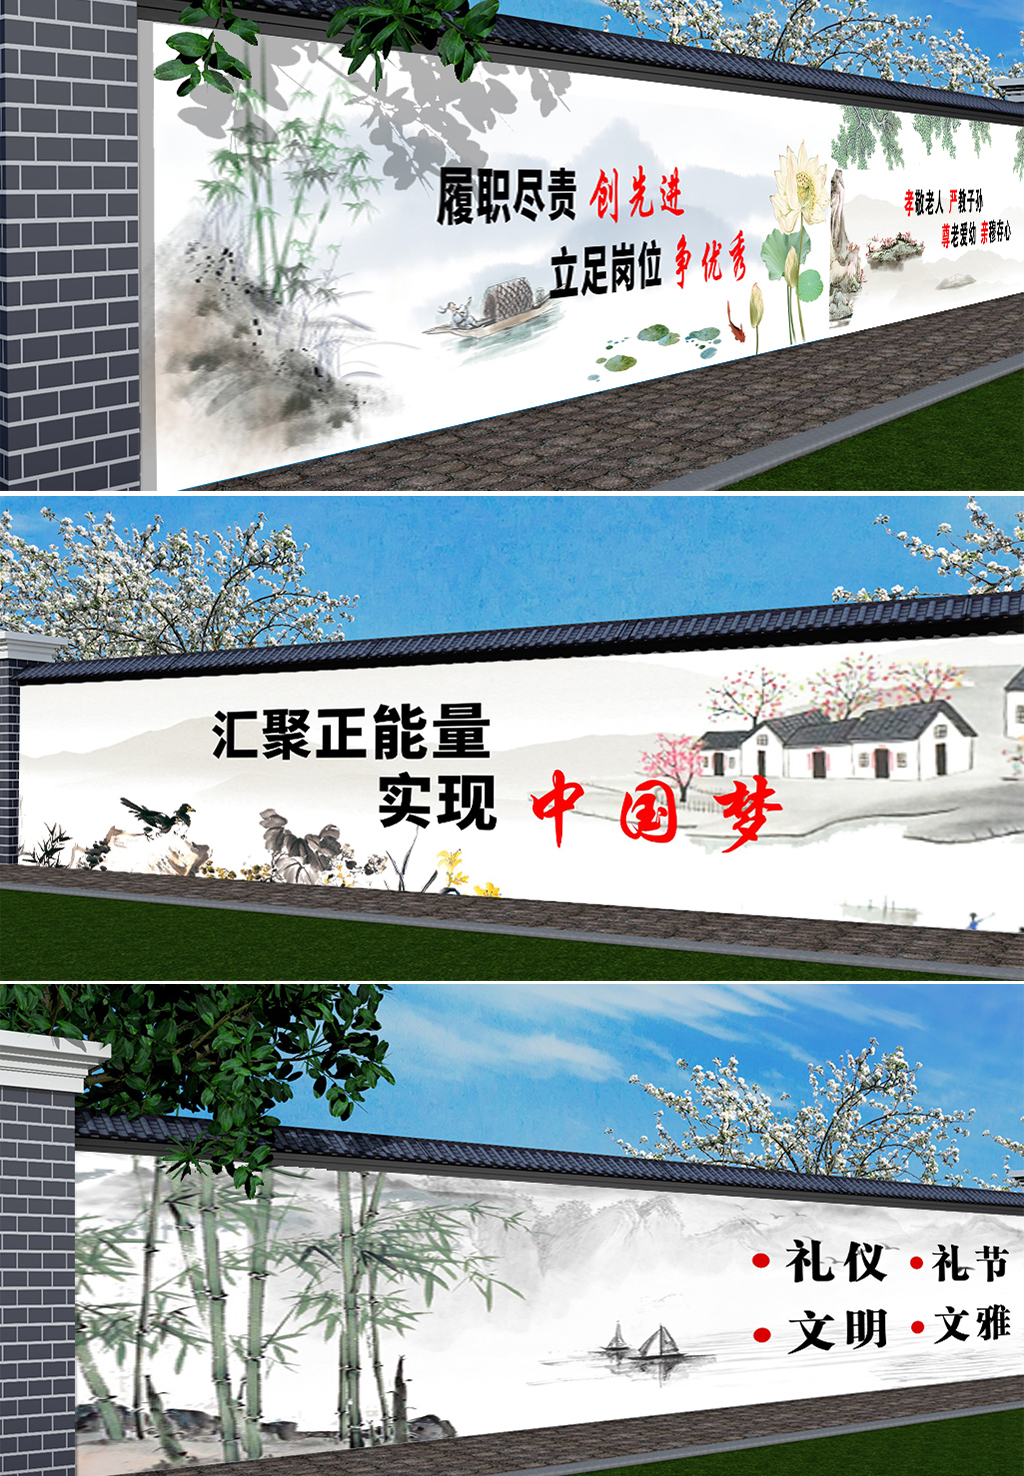 文明山水墙绘手绘墙画素材美丽新农村建设美好乡村文化墙cdr设计